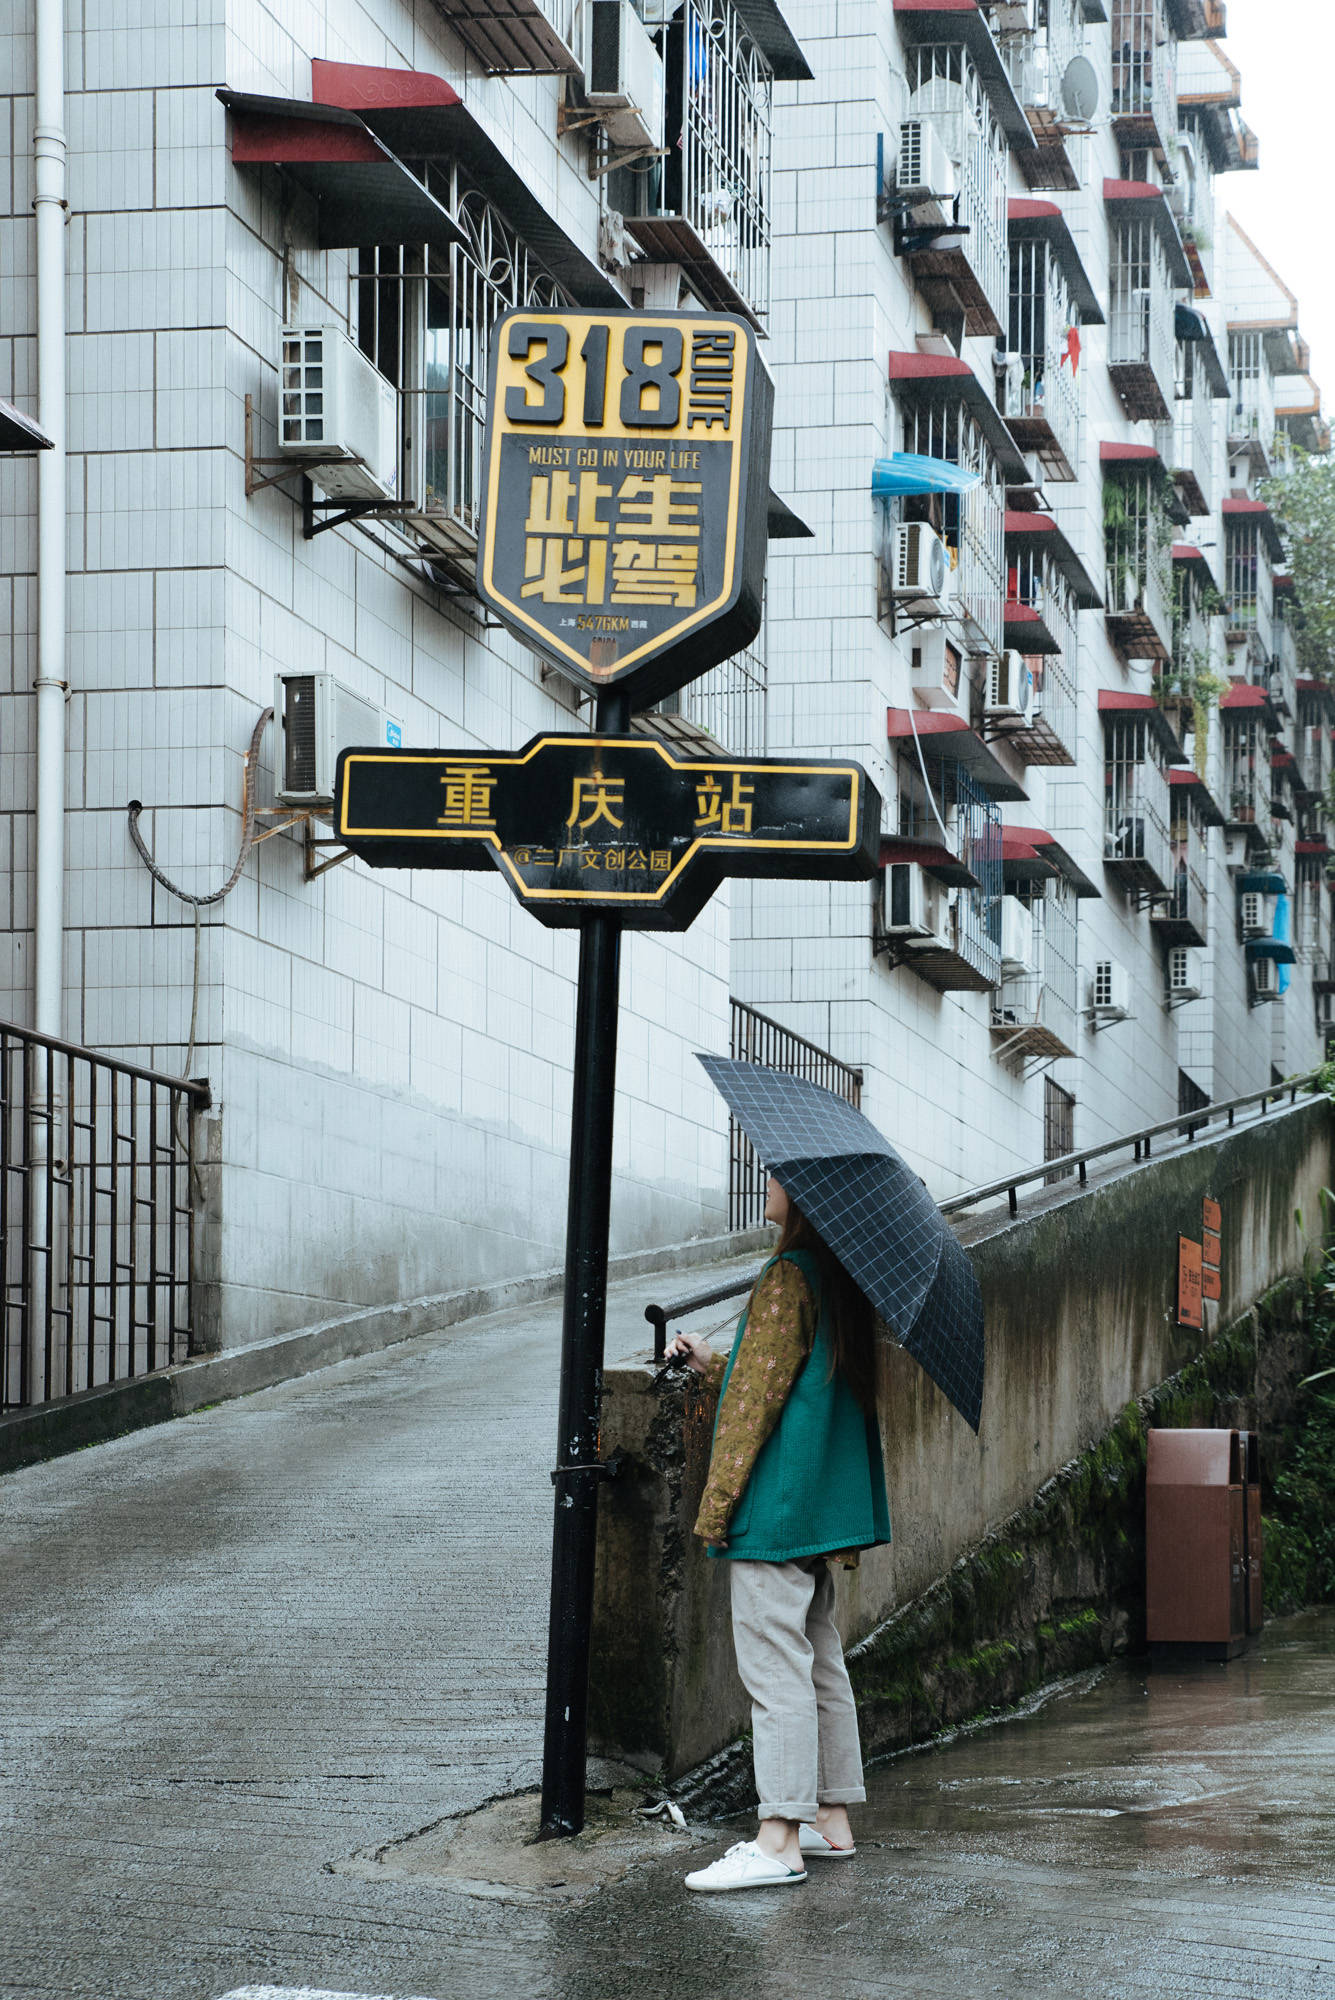 重庆旅游必打卡的景点之一，因多部电影在此取景而走红，不要门票